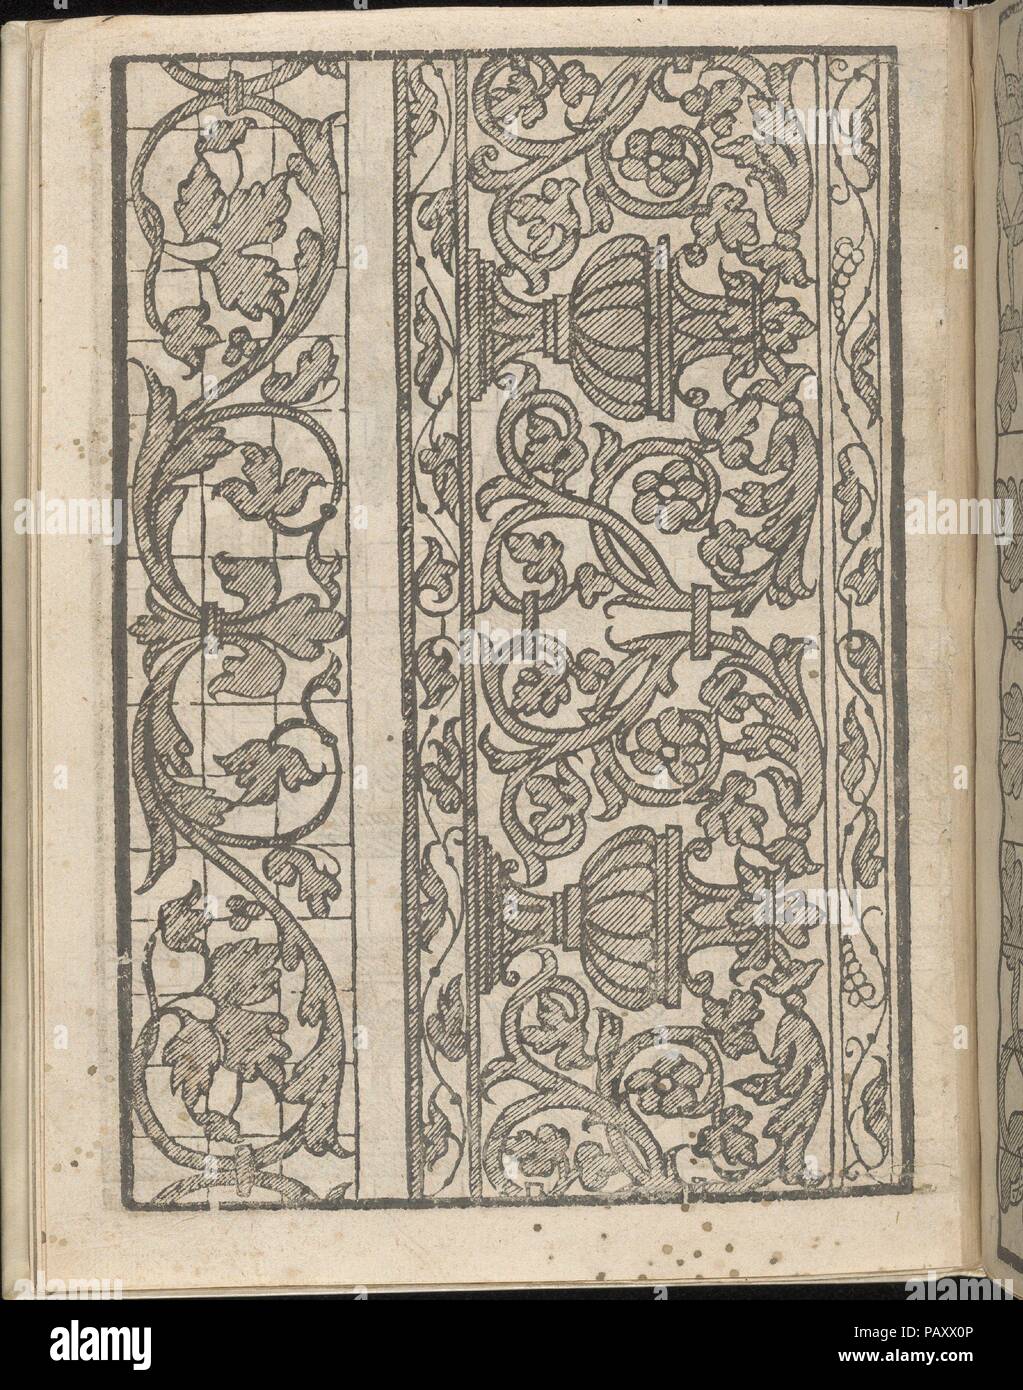 Lucidario di Recami, pagina 5 (verso). Progettista: Iseppo Foresto (italiano, attivo a Venezia, 1557). Dimensioni: complessivo: 7 7/8 x 5 7/8 in. (20 x 15 cm). Pubblicato in: Venezia. Editore: Jeronimo Calepio , 1564. Data: 1564. Progettato da Iseppo Foresto, pubblicato da Jeronimo Calepio, 1564. Dall'alto al basso e da sinistra a destra: Design composto da 2 colonne verticali; solo la colonna di sinistra è stampata su una griglia. La colonna di sinistra è decorata nel centro con un Fleur de Lis che ha steli che la curva verso l'esterno. La colonna di destra è costituita da una parte centrale che è decorato con un motivo ripetuto di un fiore in Foto Stock